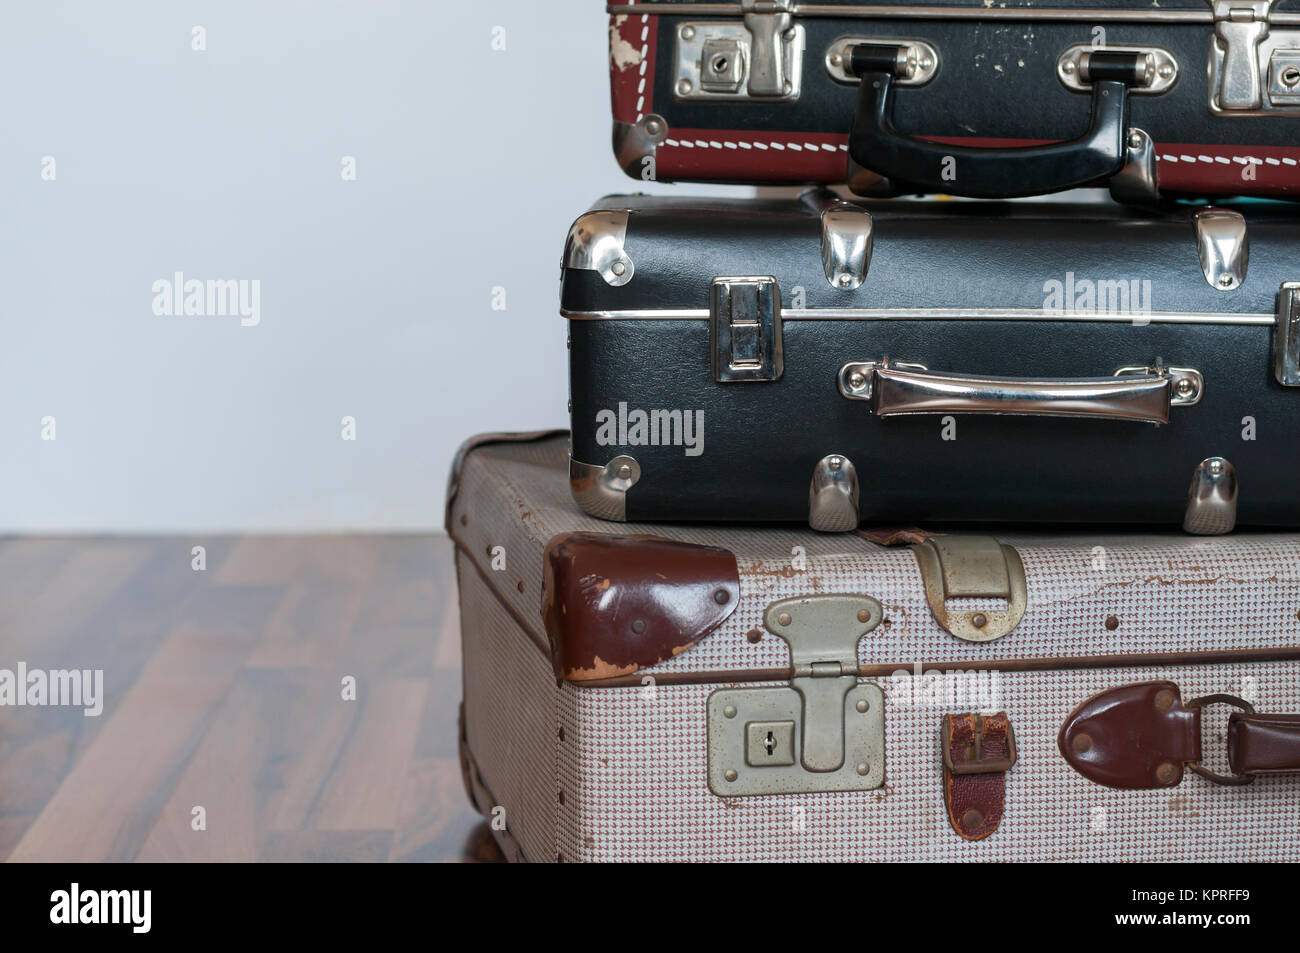 Reise Hintergrund, ein Stapel alter Koffer mit Textfreiraum. Stock Photo